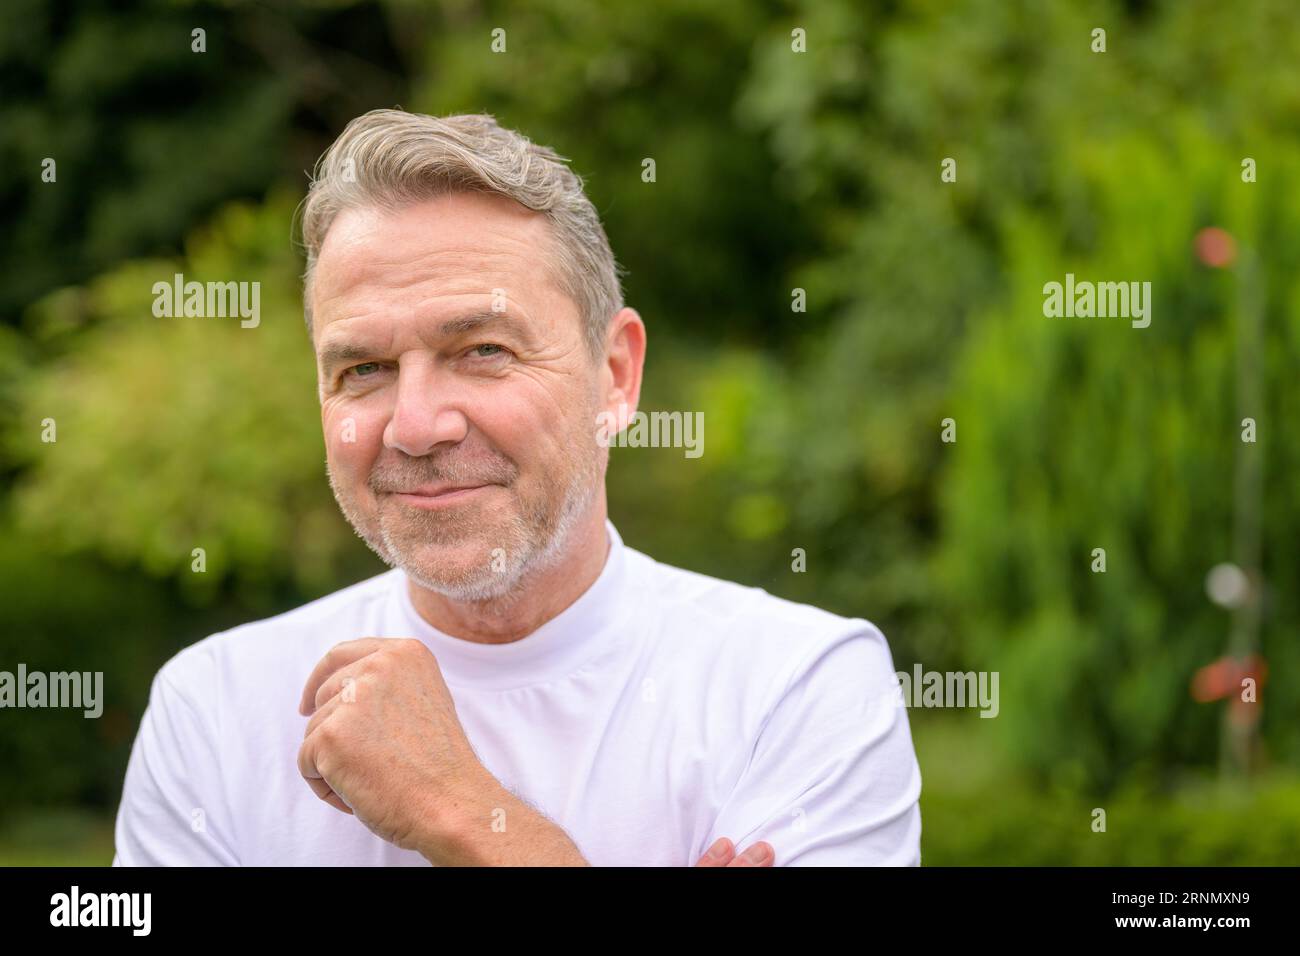 Nahaufnahme eines attraktiven Mannes mittleren Alters in seinen fünfziger Jahren mit einem schelmischen Lächeln, während er im Garten steht Stockfoto